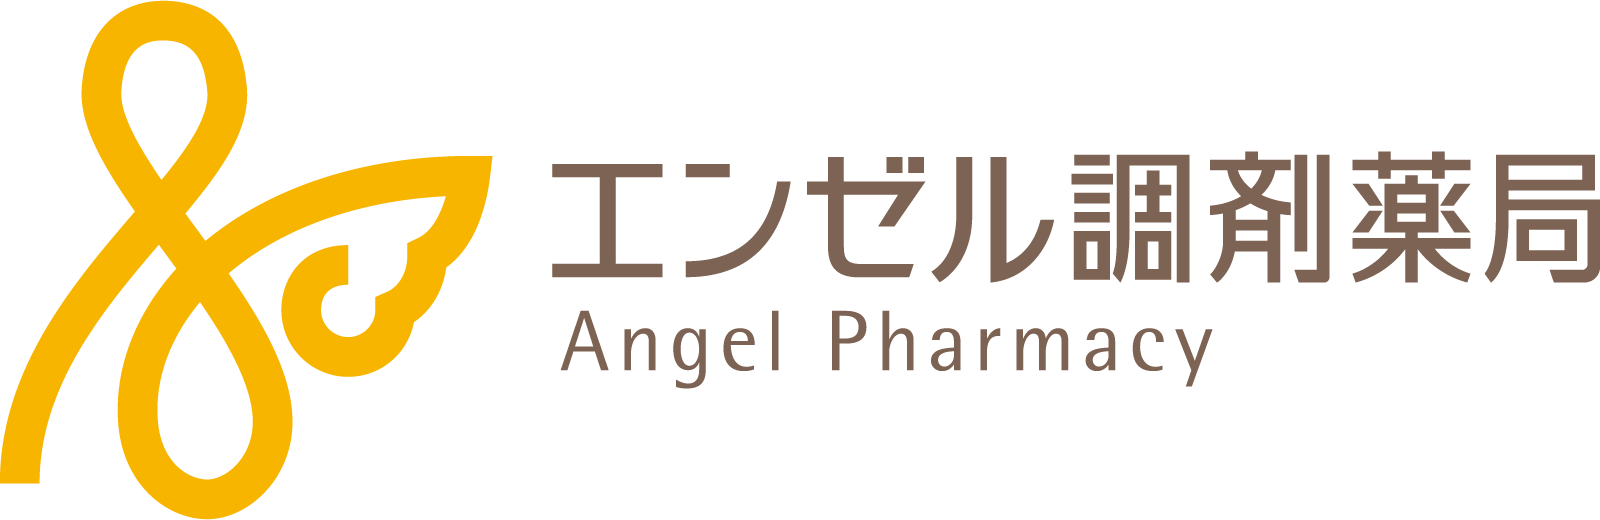 エンゼル調剤薬局 Angel Pharmacy 徳島